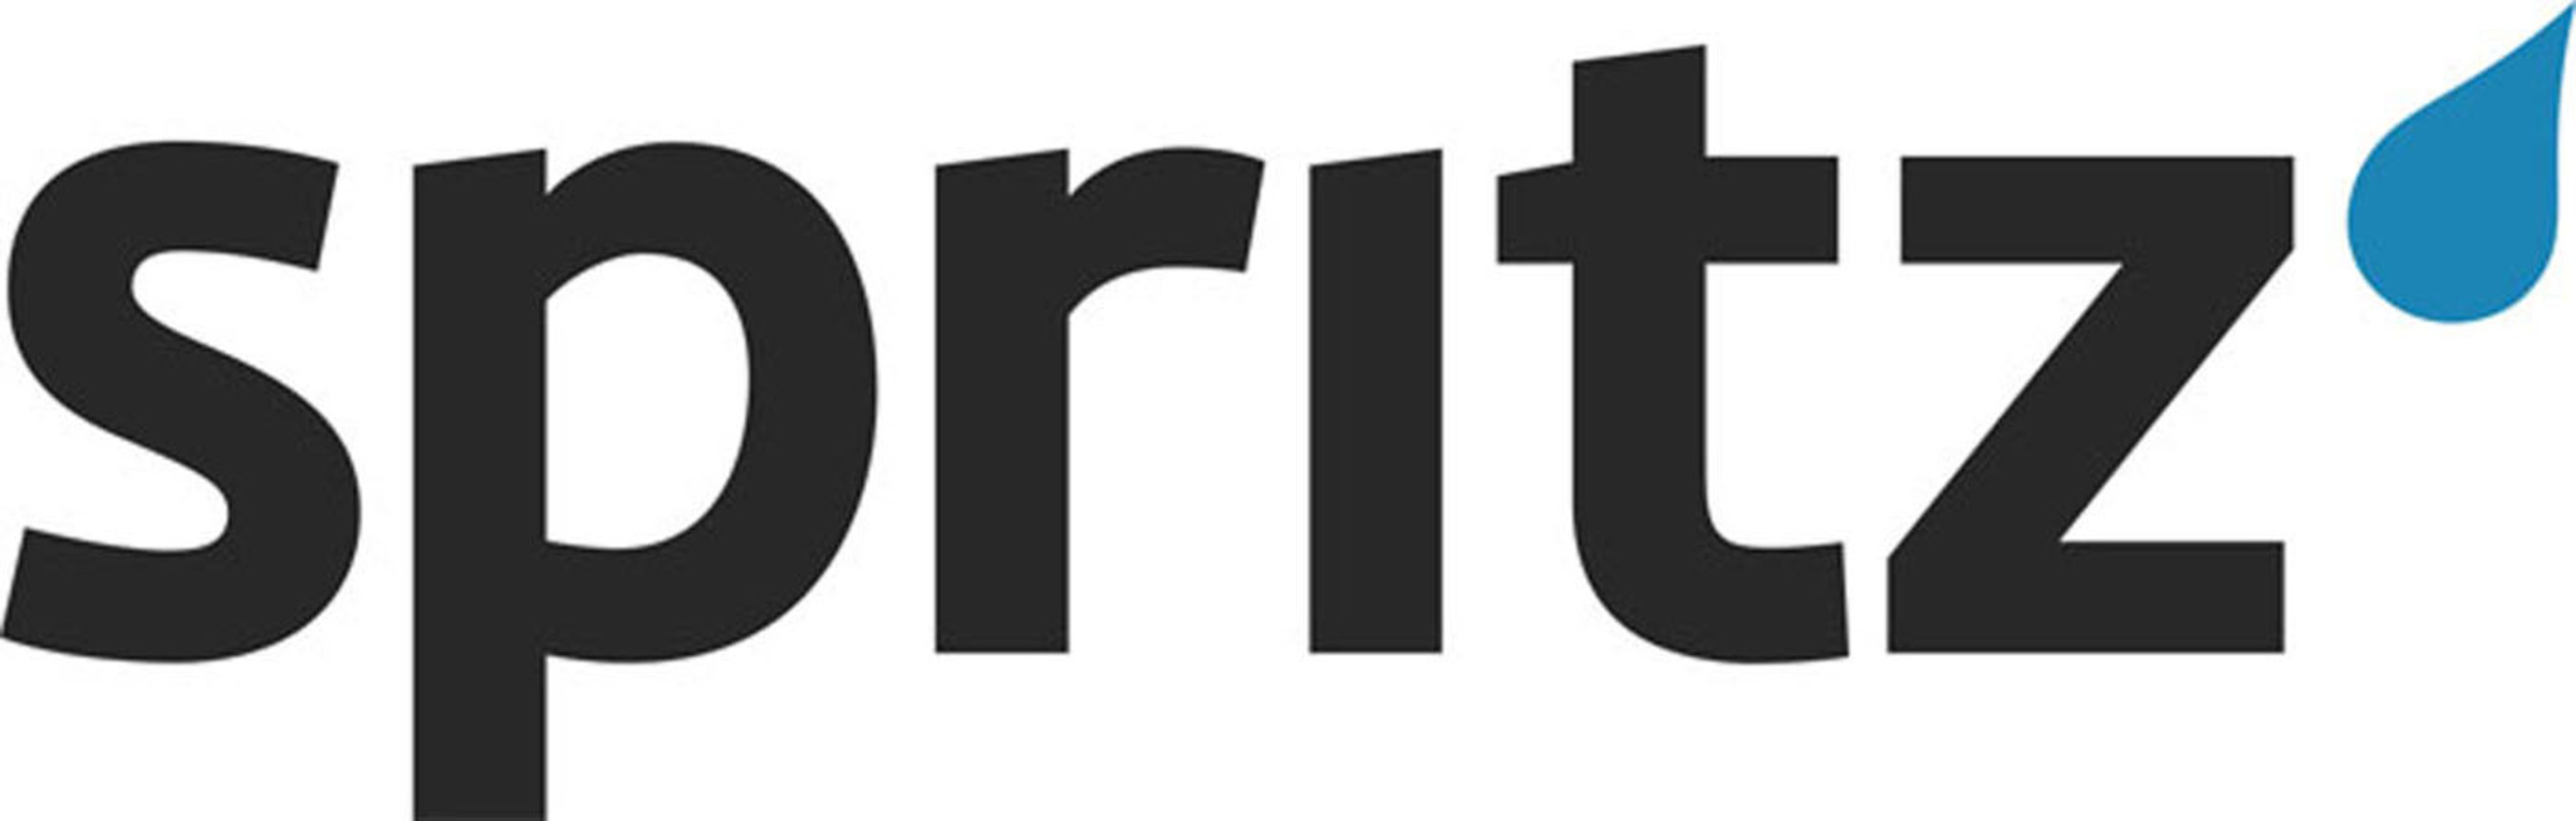 Spritz Logo. (PRNewsFoto/Spritz) (PRNewsFoto/SPRITZ)